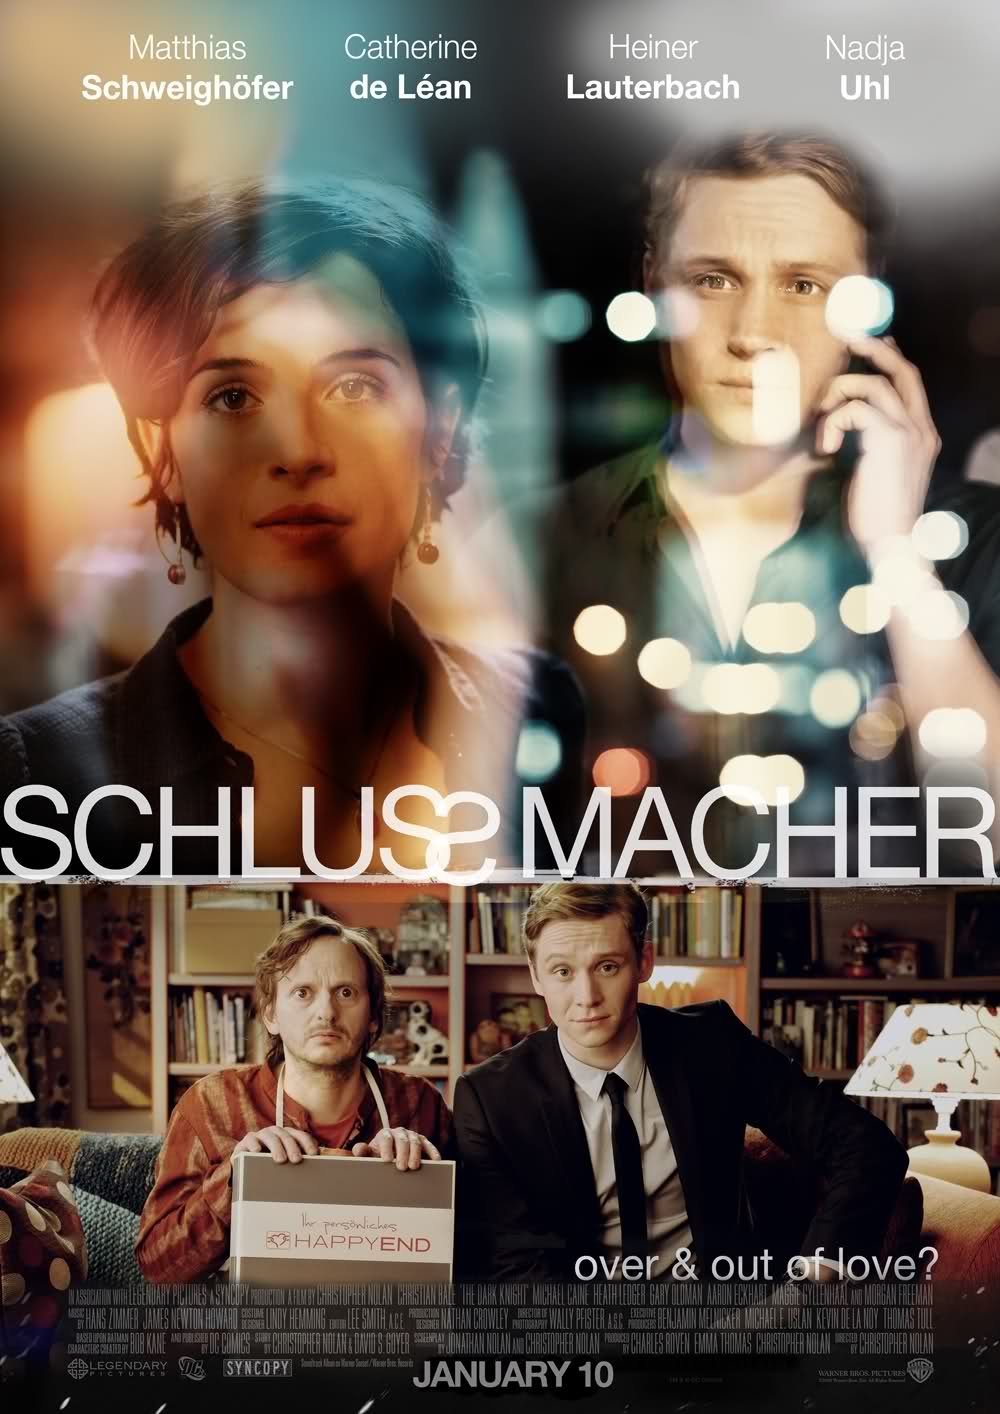 L'affiche originale du film Schlussmacher en allemand